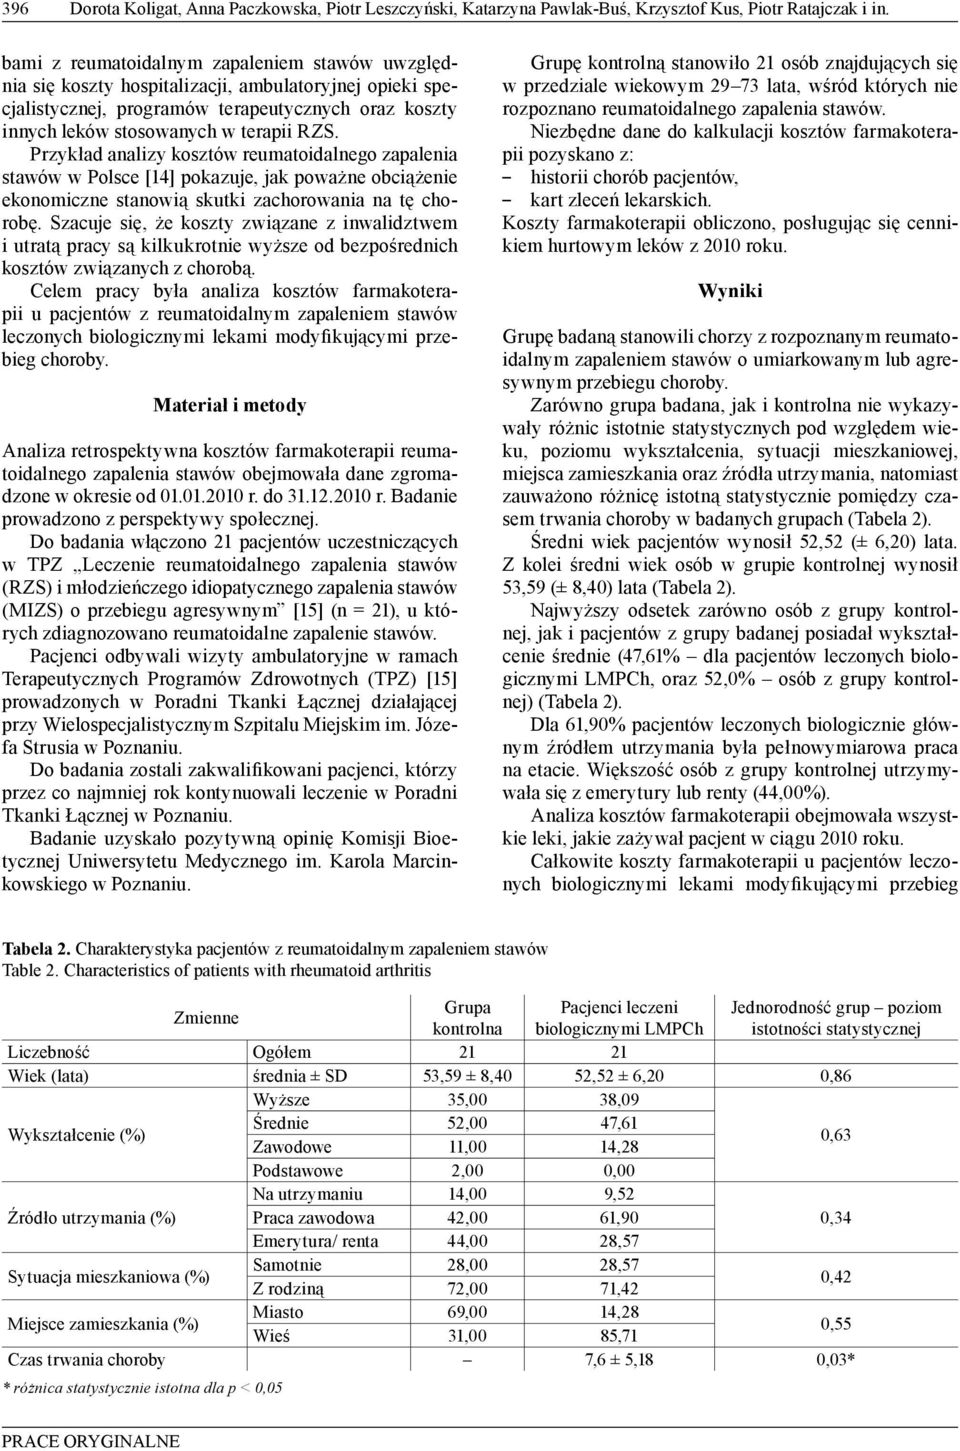 Przykład analizy kosztów reumatoidalnego zapalenia stawów w Polsce [4] pokazuje, jak poważne obciążenie ekonomiczne stanowią skutki zachorowania na tę chorobę.